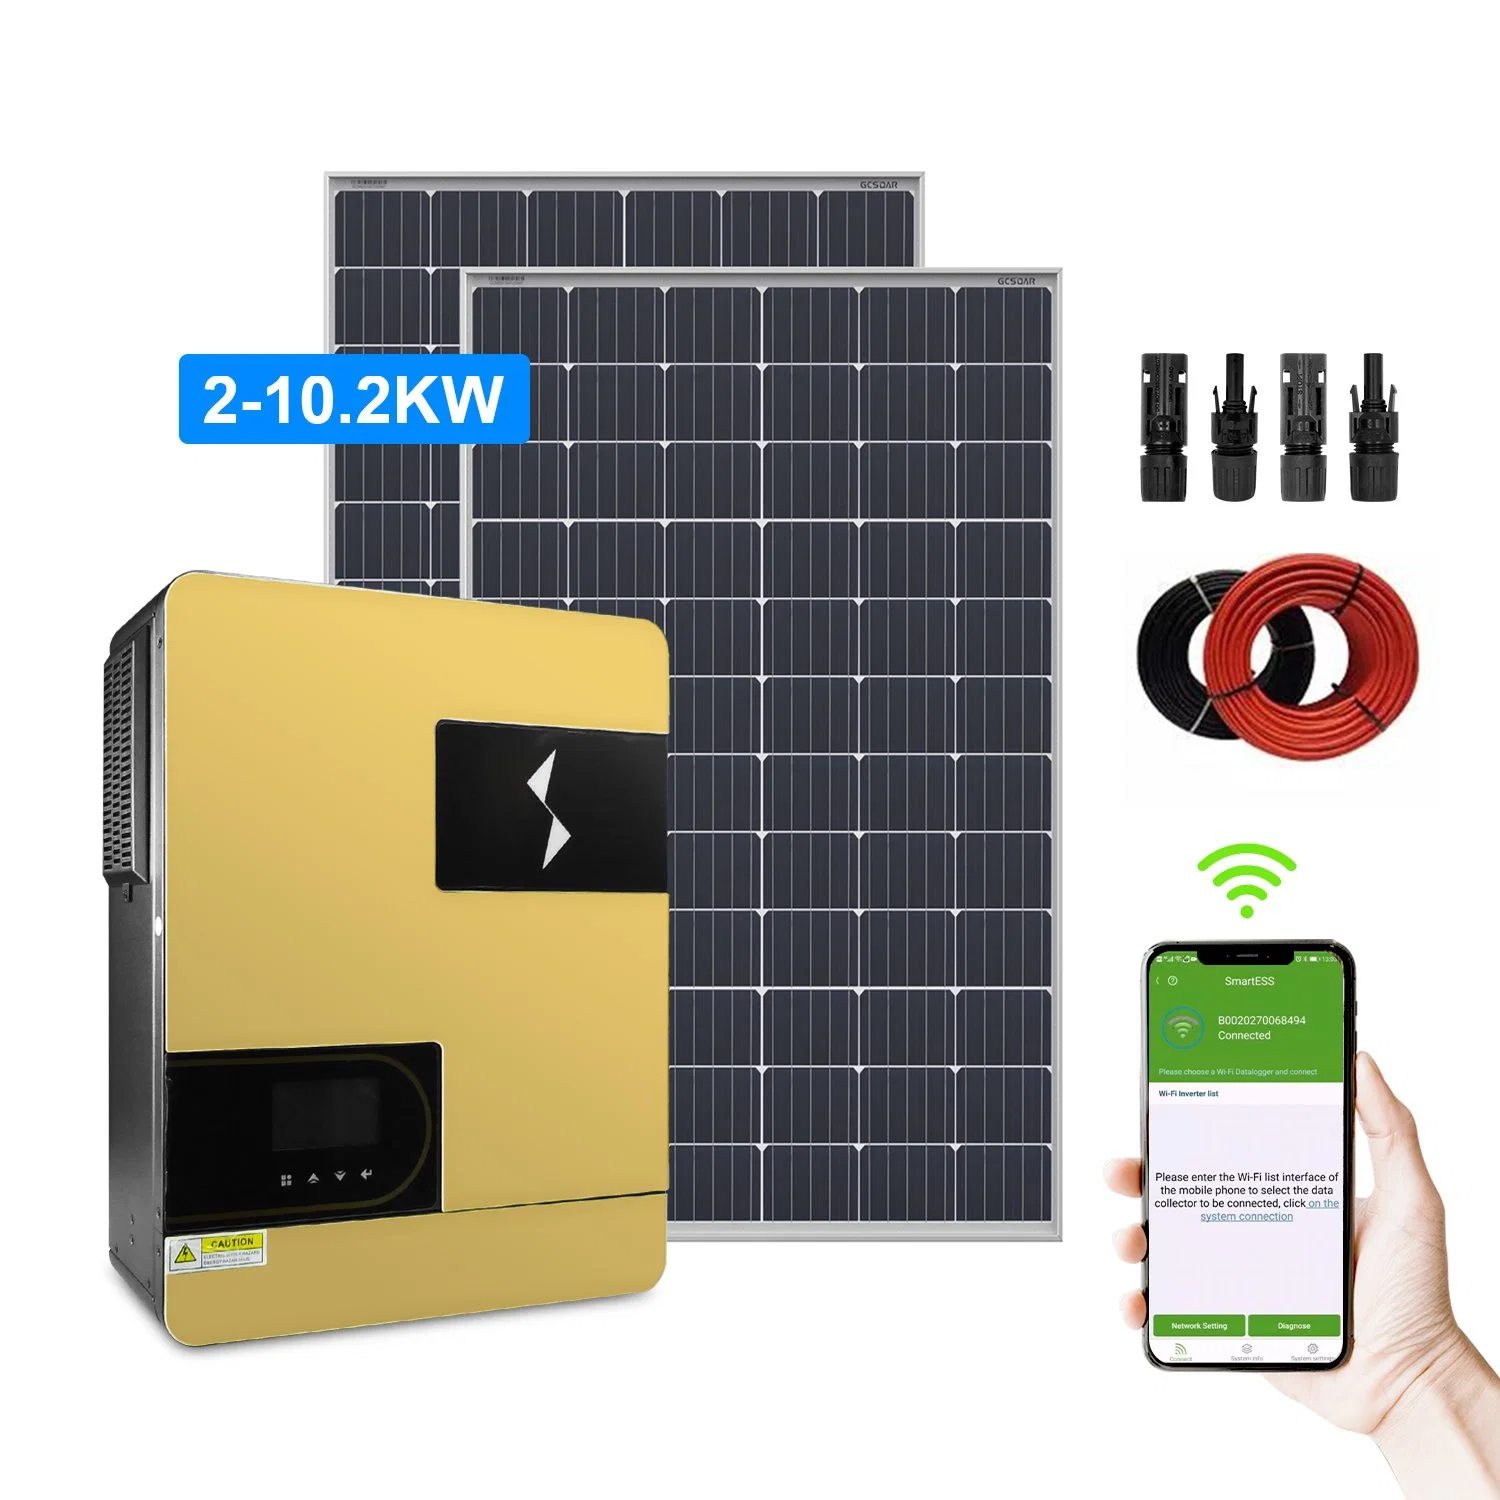 مصنع Gchyarp 3kw محول عامل بالطاقة الشمسية 3.6 كيلو واط على الشبكة الهجينة المحول الهجين العامل بالطاقة الشمسية